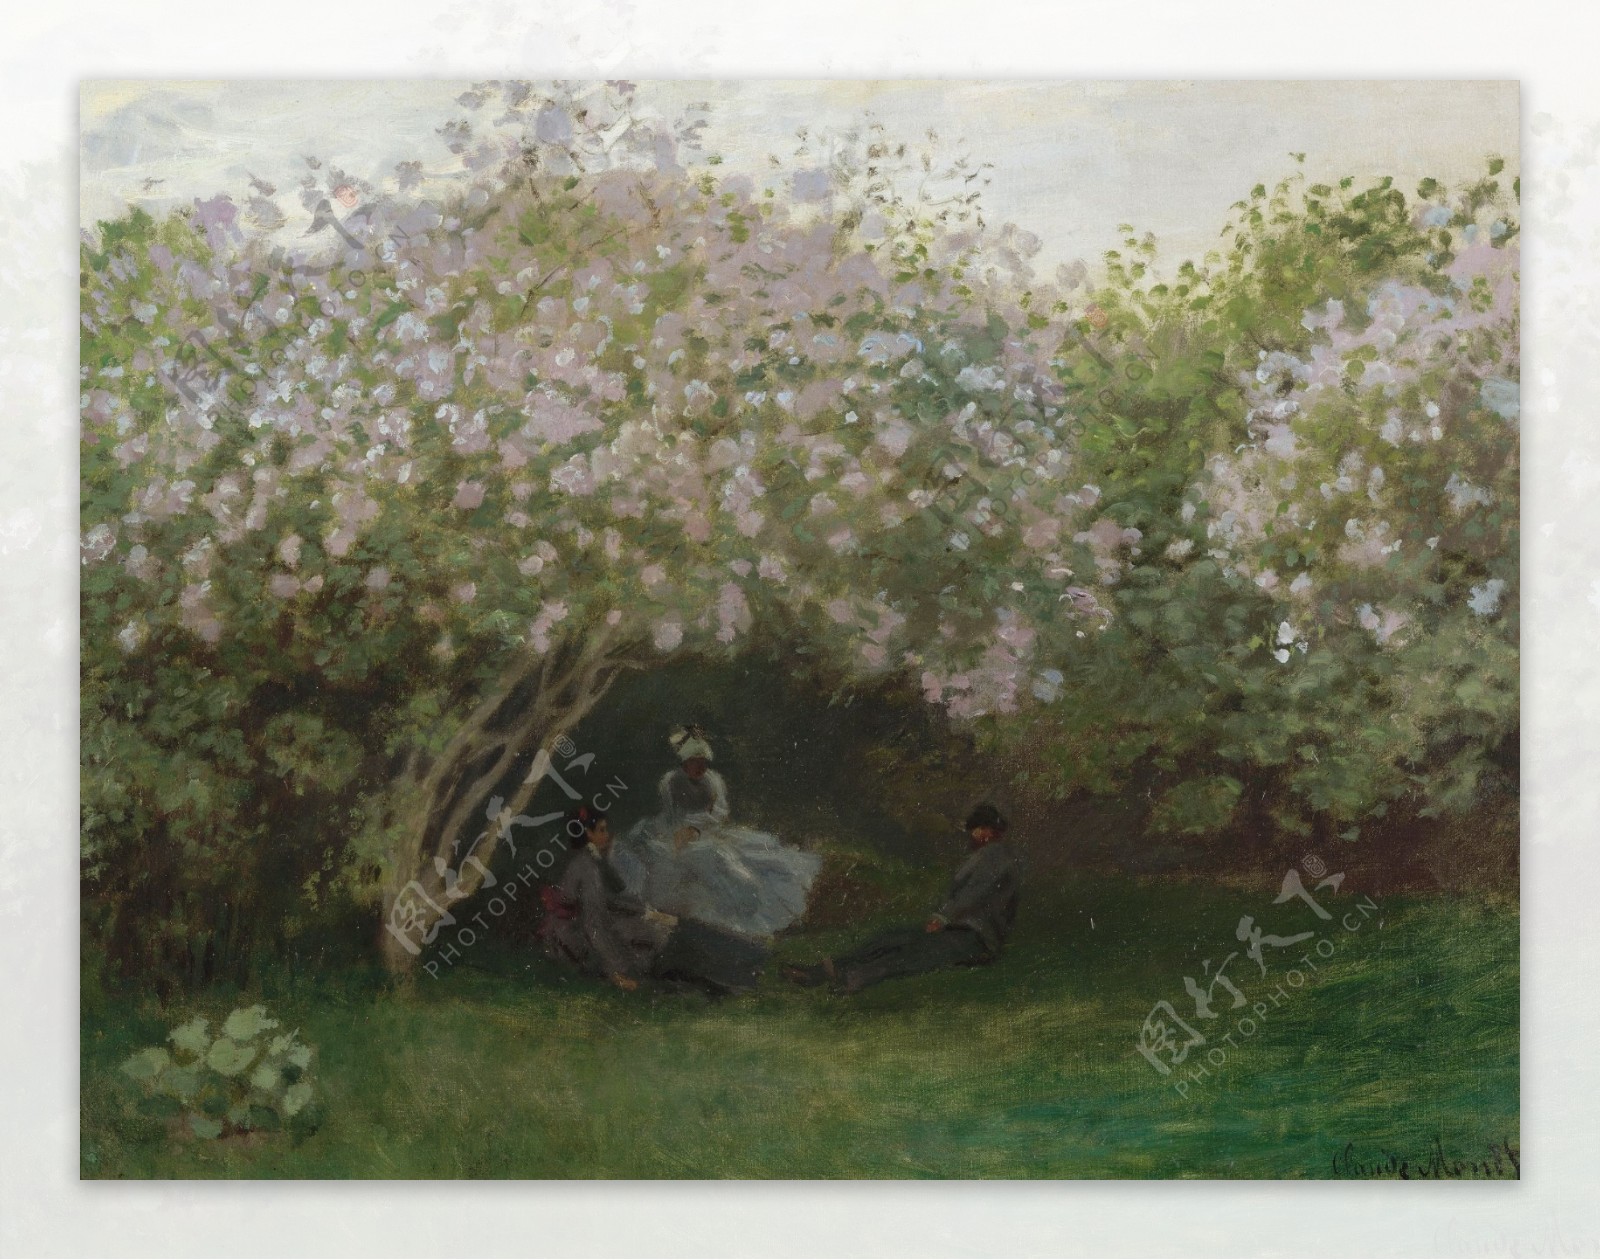 LilacsGreyWeather1872风景建筑田园植物水景田园印象画派写实主义油画装饰画